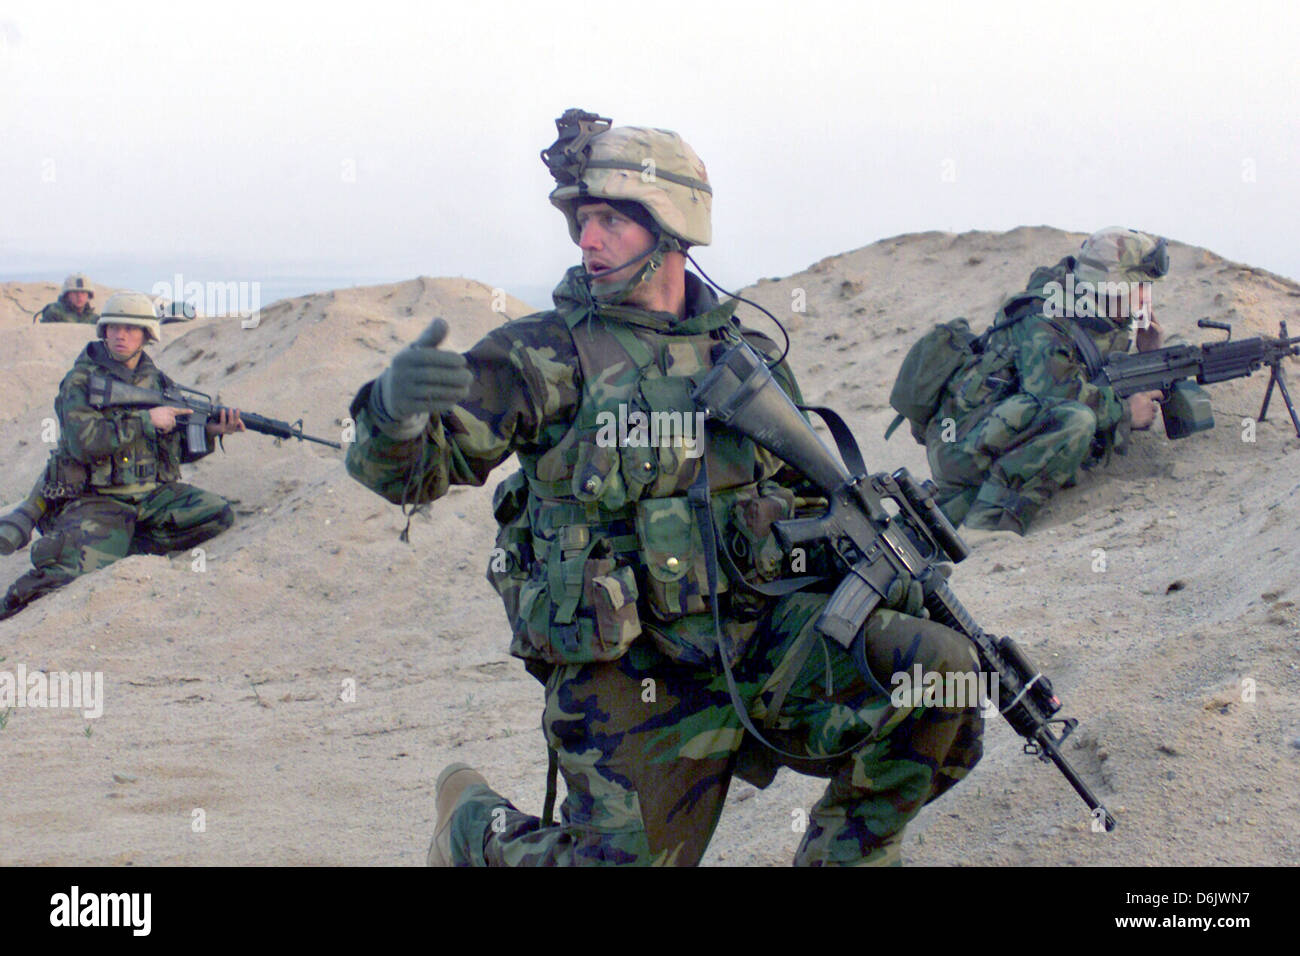 US-Marines Special Operations Teamposition während der Invasion des Irak zu Beginn der Operation Iraqi Freedom March 23, 2002 in Zubair, Irak. Stockfoto